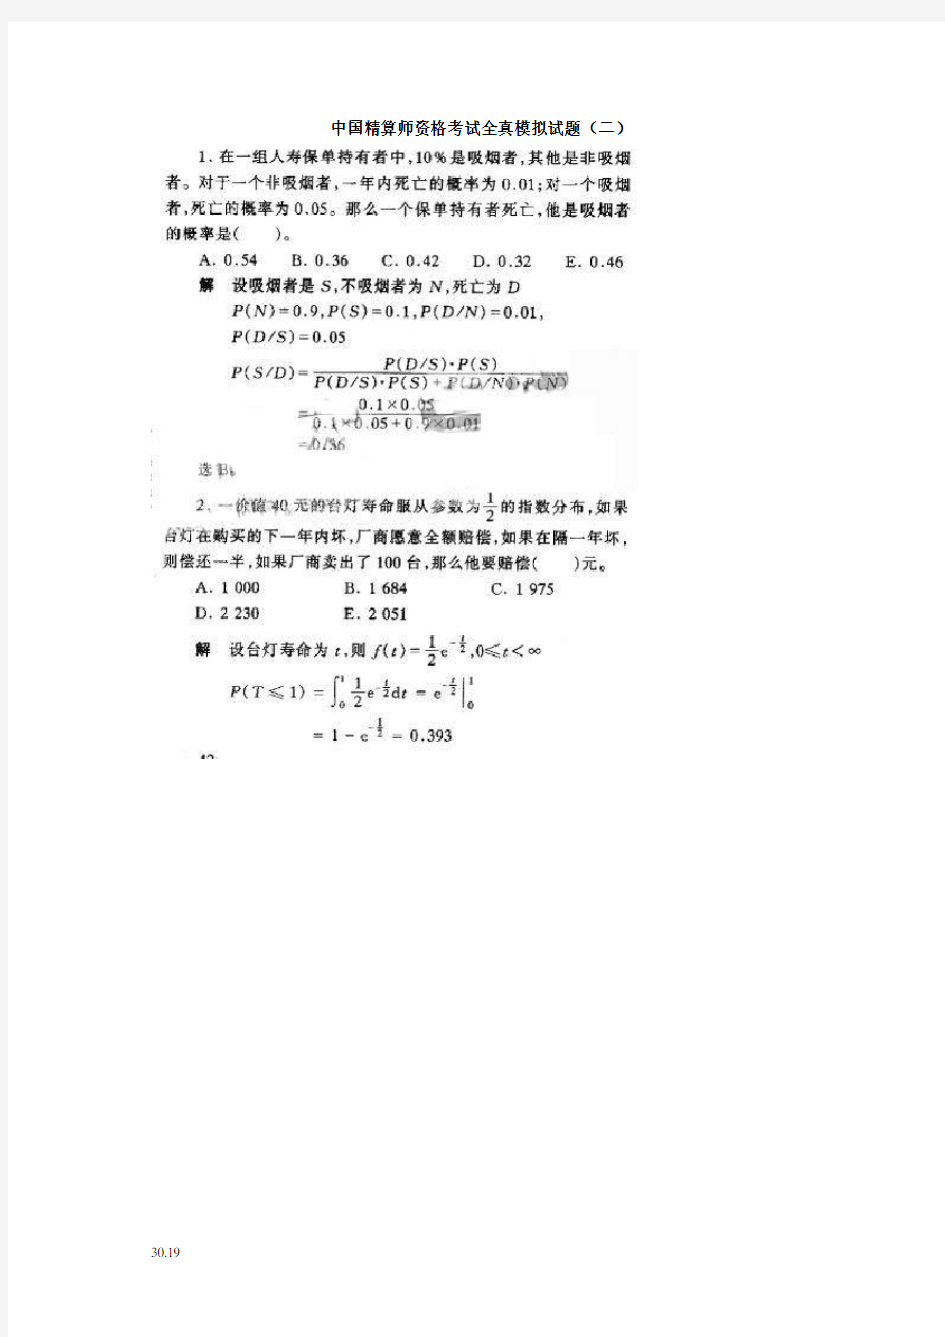 中国精算师资格考试全真模拟试题(二)(呕心沥血整理,值得一看)